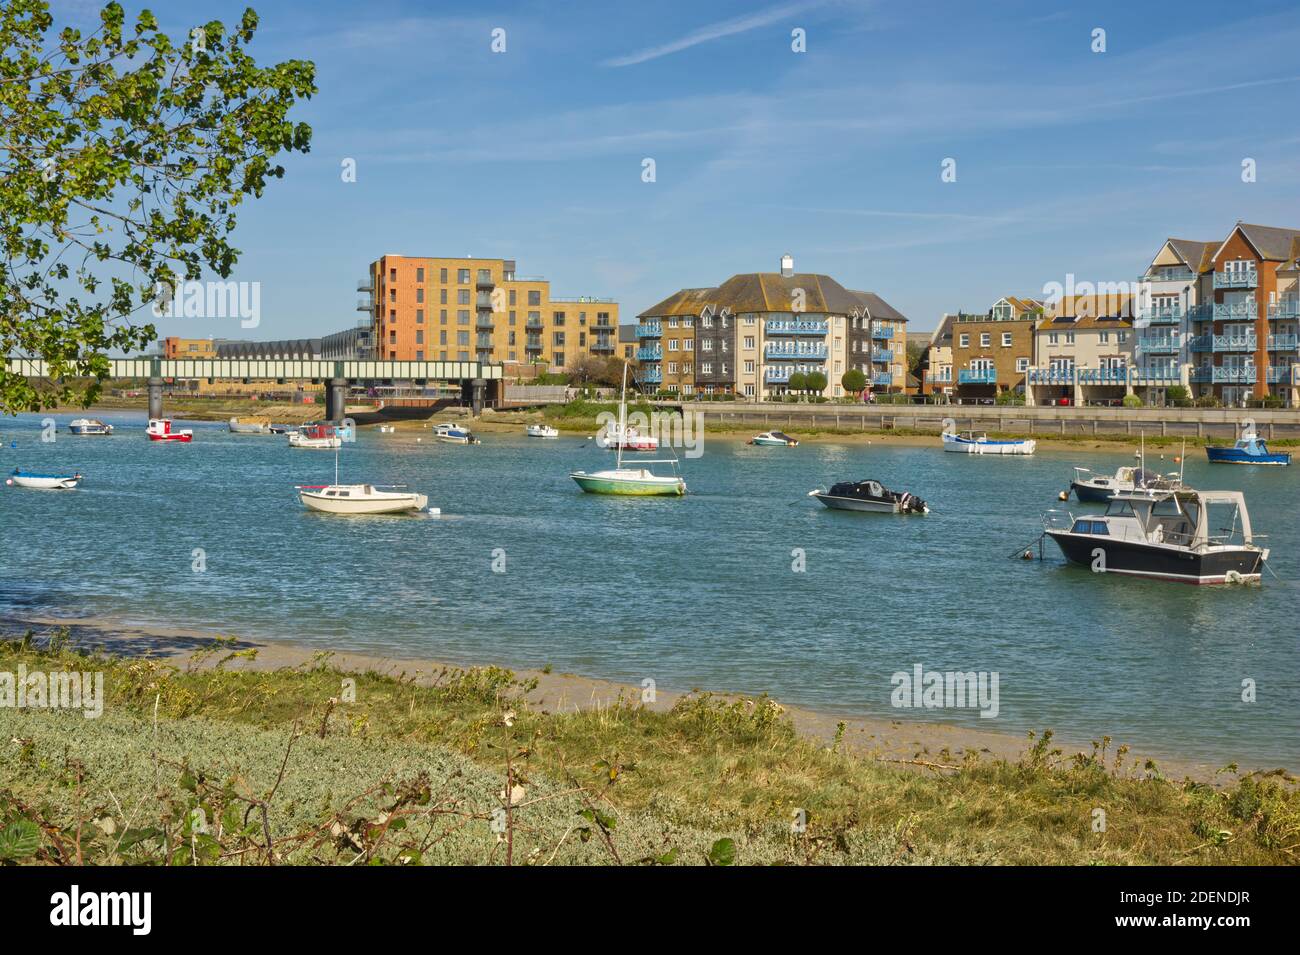 Appartements modernes sur le bord de la rivière Adur à Shoreham, West Sussex, Angleterre Banque D'Images